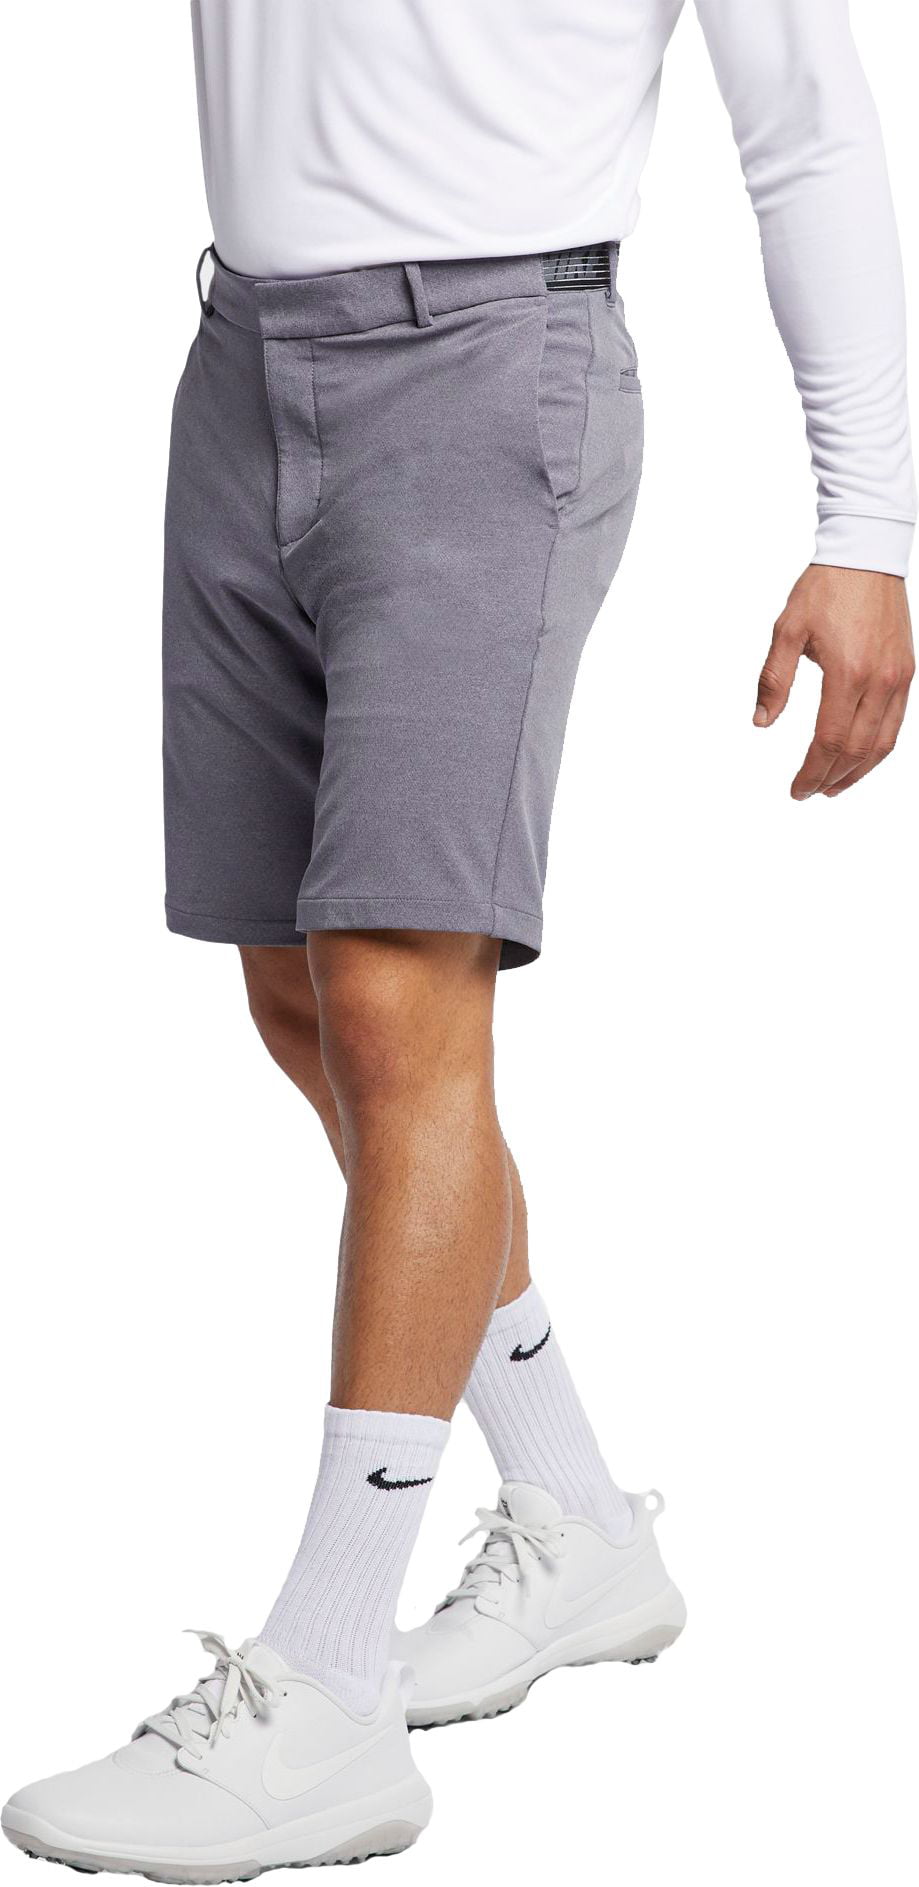 Men's Slim Flex Golf Shorts Walmart.com